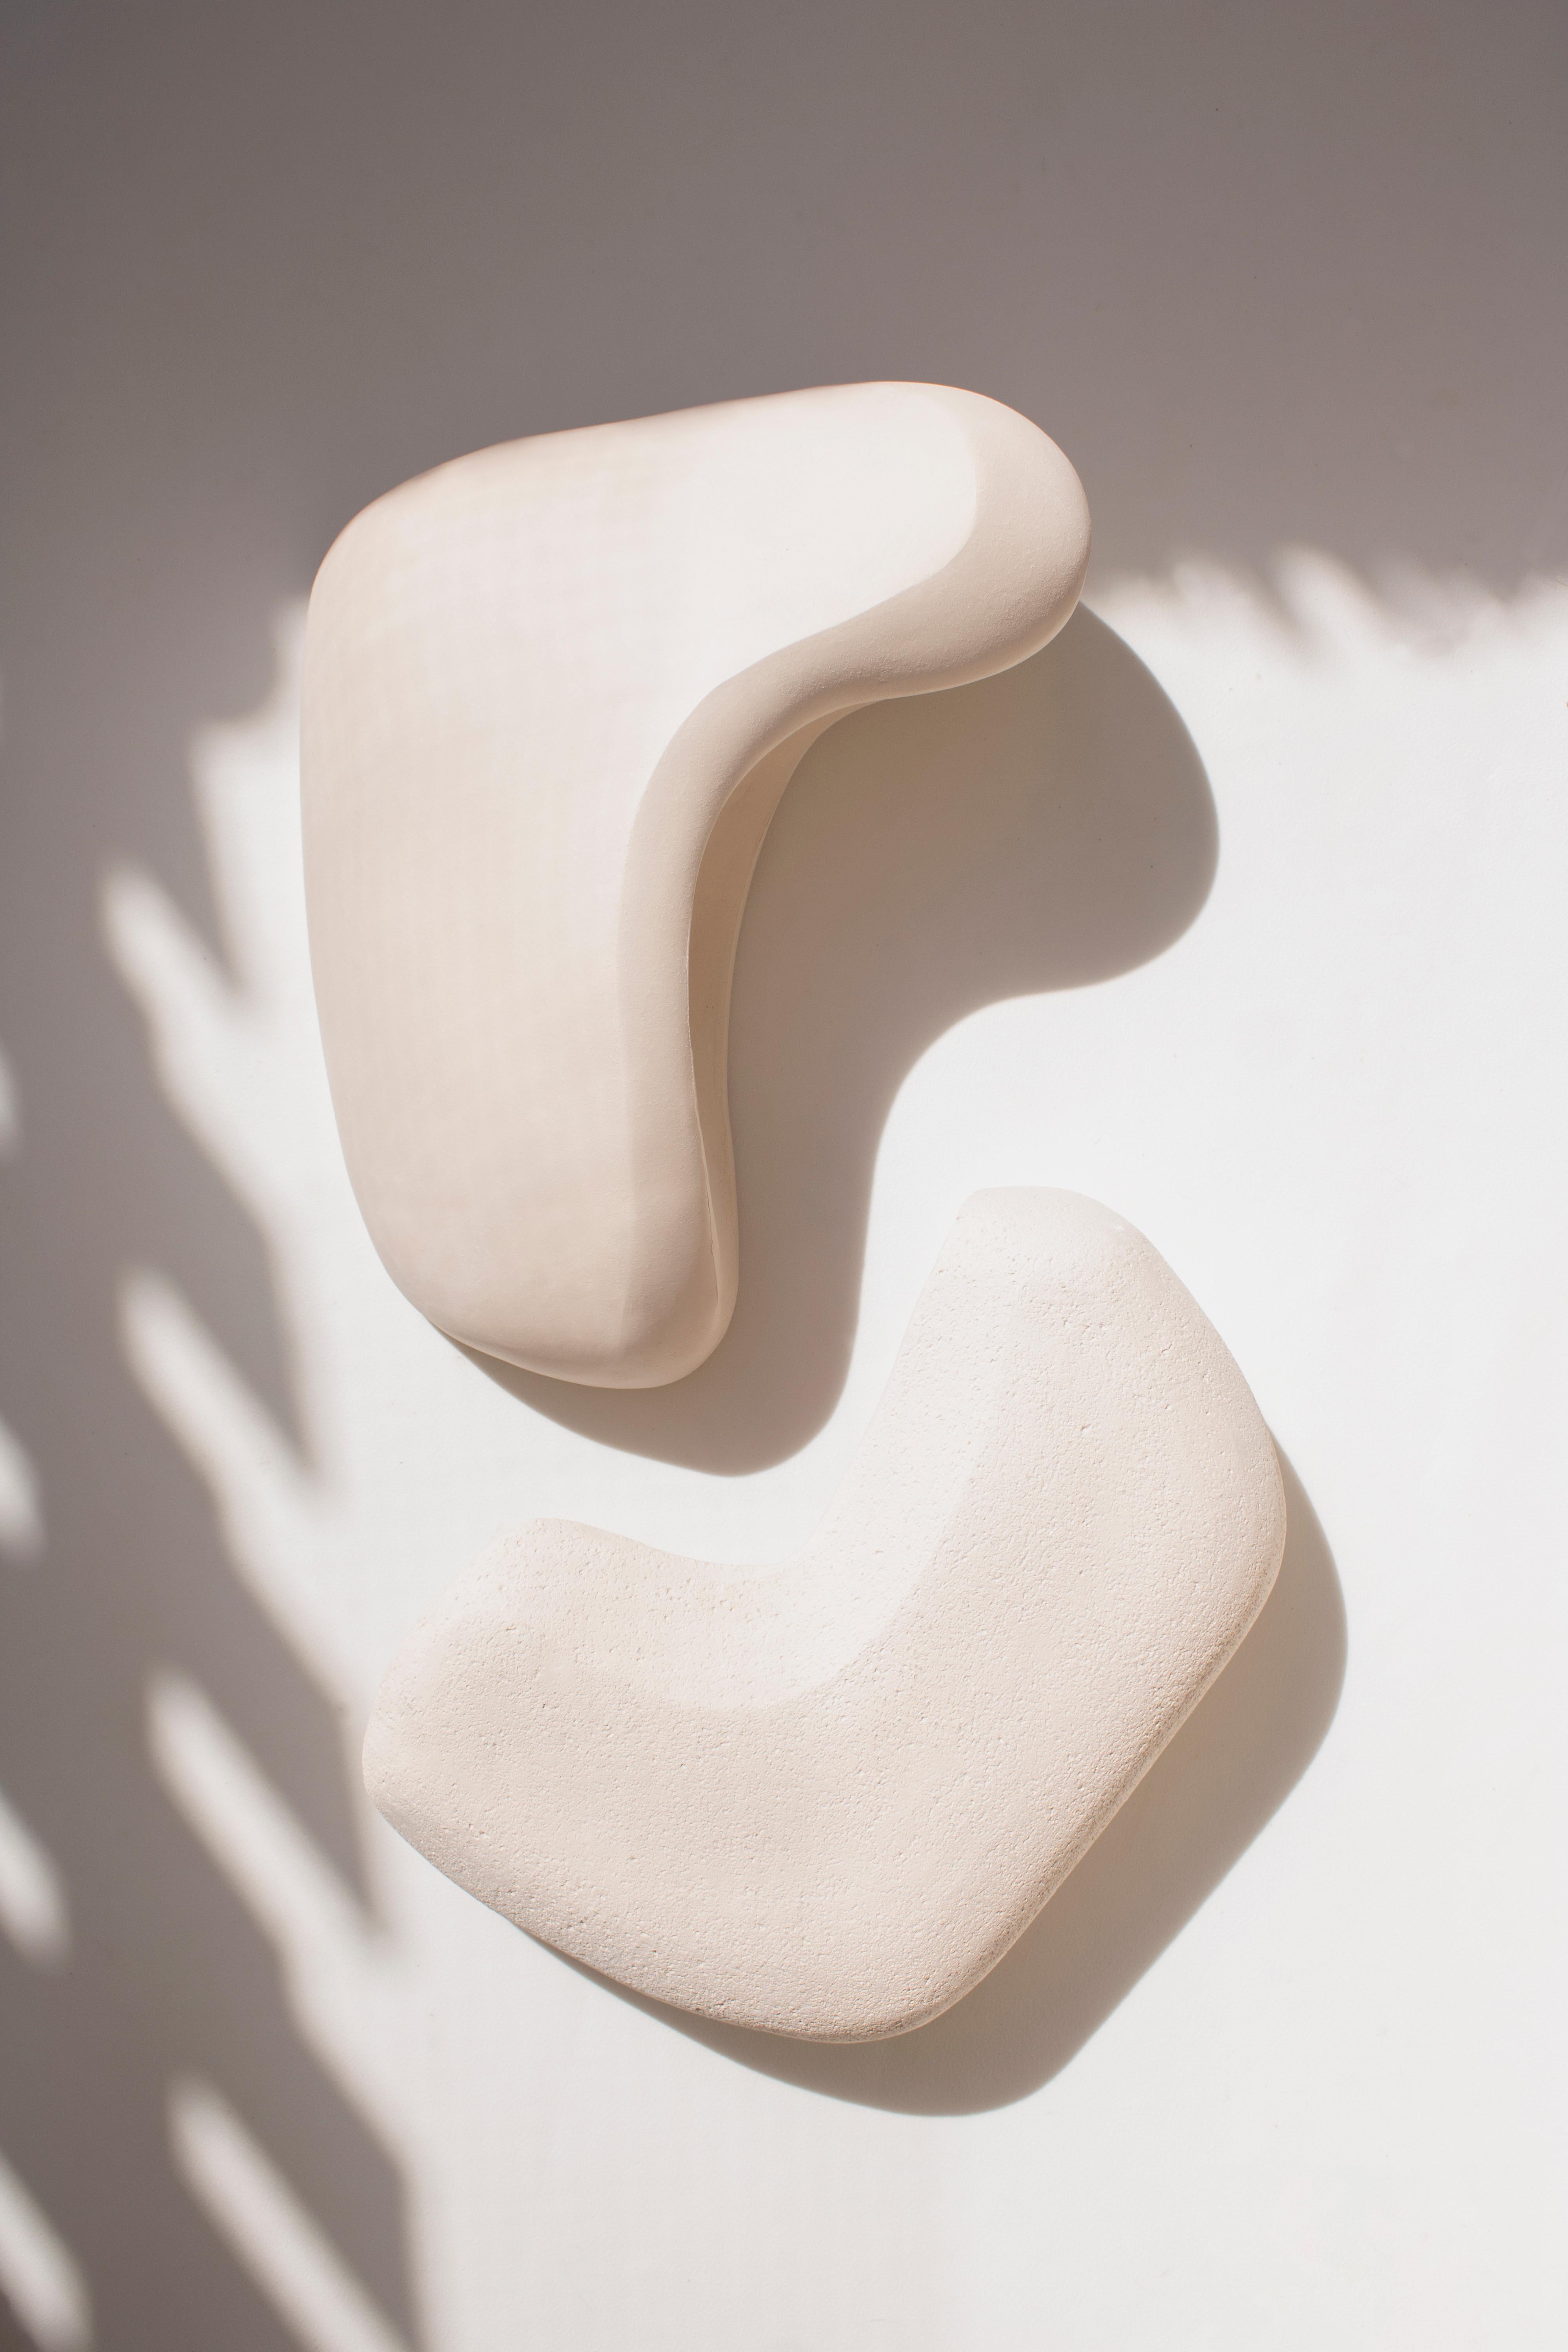 Form No.007 ist eine Serie von skulpturalen Keramik-Wandlampen aus der Forms Collection'S. Das Stück ist sorgfältig von Hand gefertigt, um die Harmonie der Asymmetrie zu erkunden. Sein einzigartiger Reiz liegt in den abstrakten Konturen und der